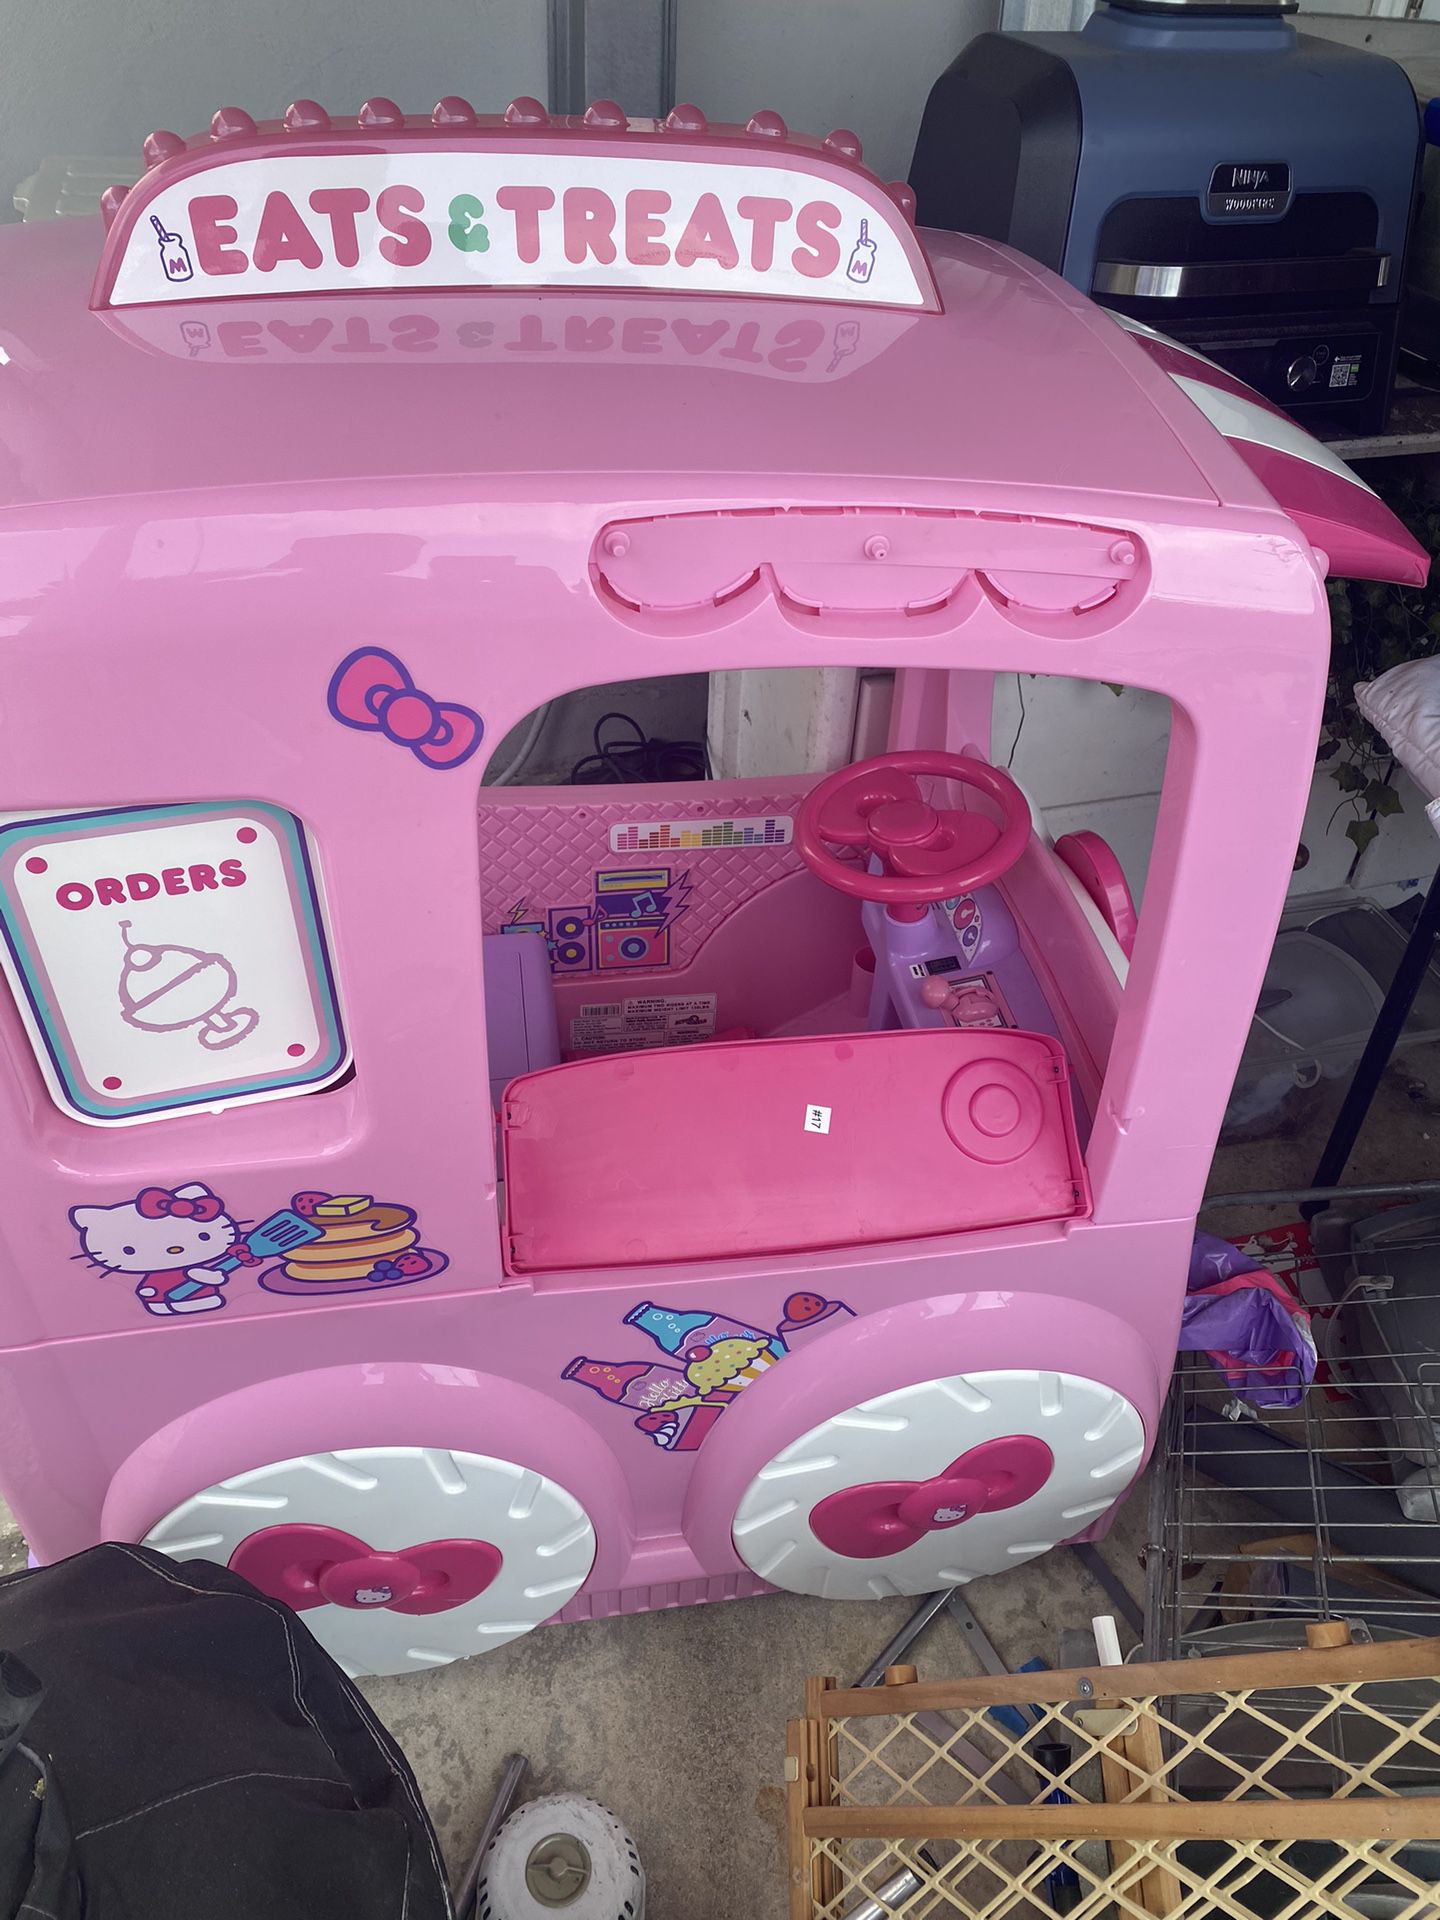 Hello Kitty “Eats And Treats” Car